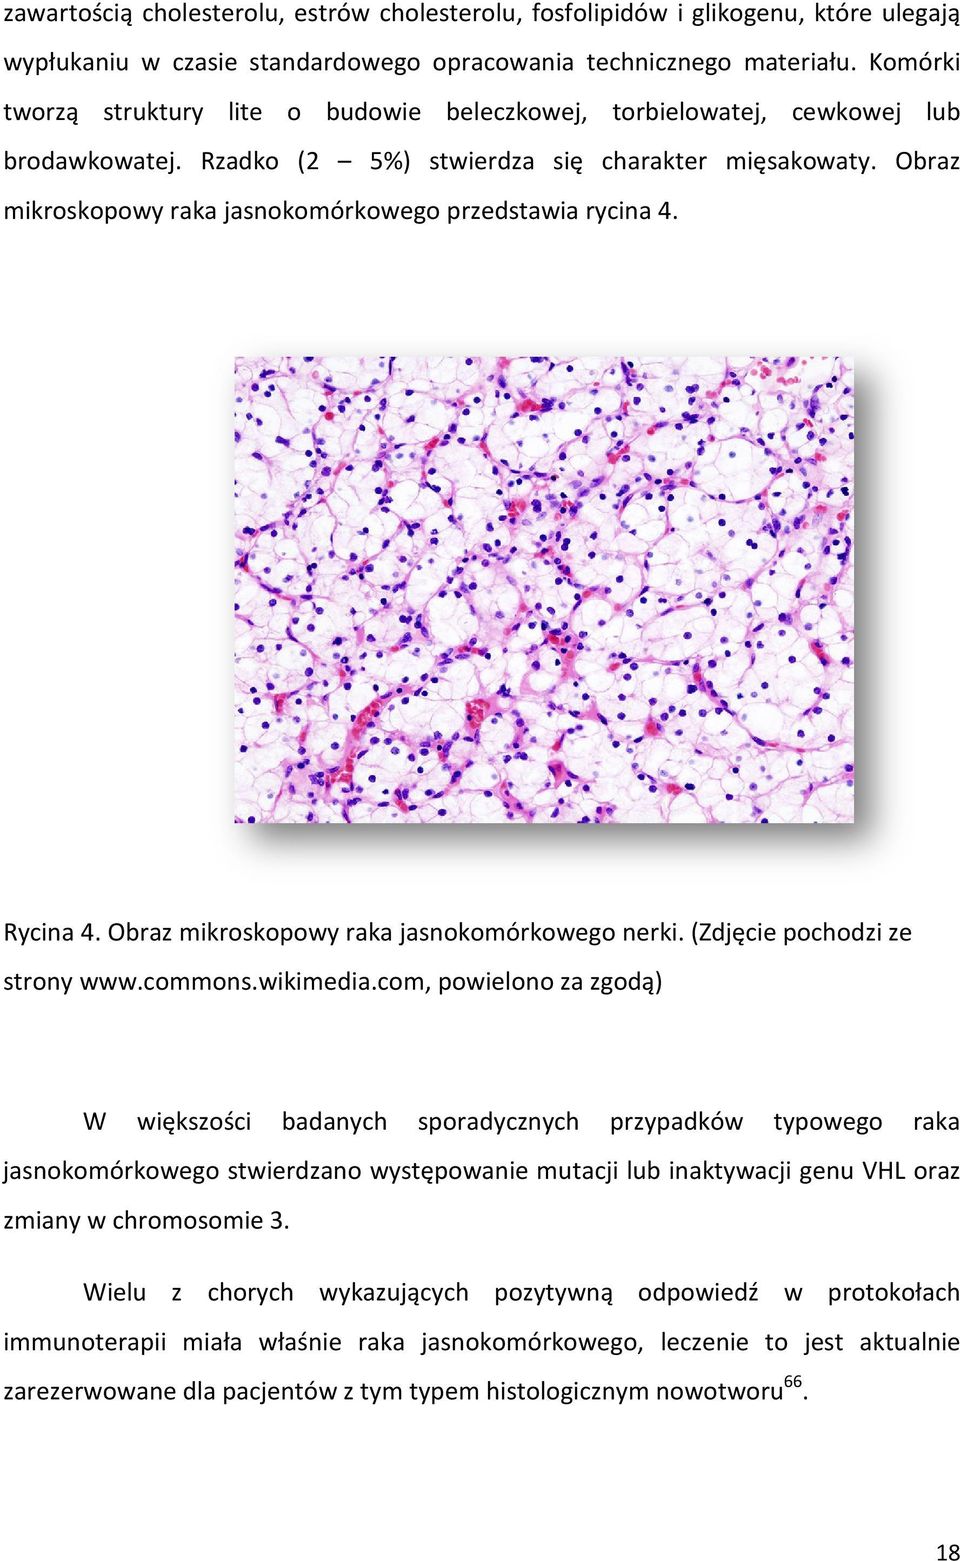 Obraz mikroskopowy raka jasnokomórkowego jasnoko przedstawia rycina 4. Rycina 4.. Obraz mikroskopowy raka jasnokomórkowego nerki. (Zdjęcie pochodzi ze strony www.commons.wikimedia.